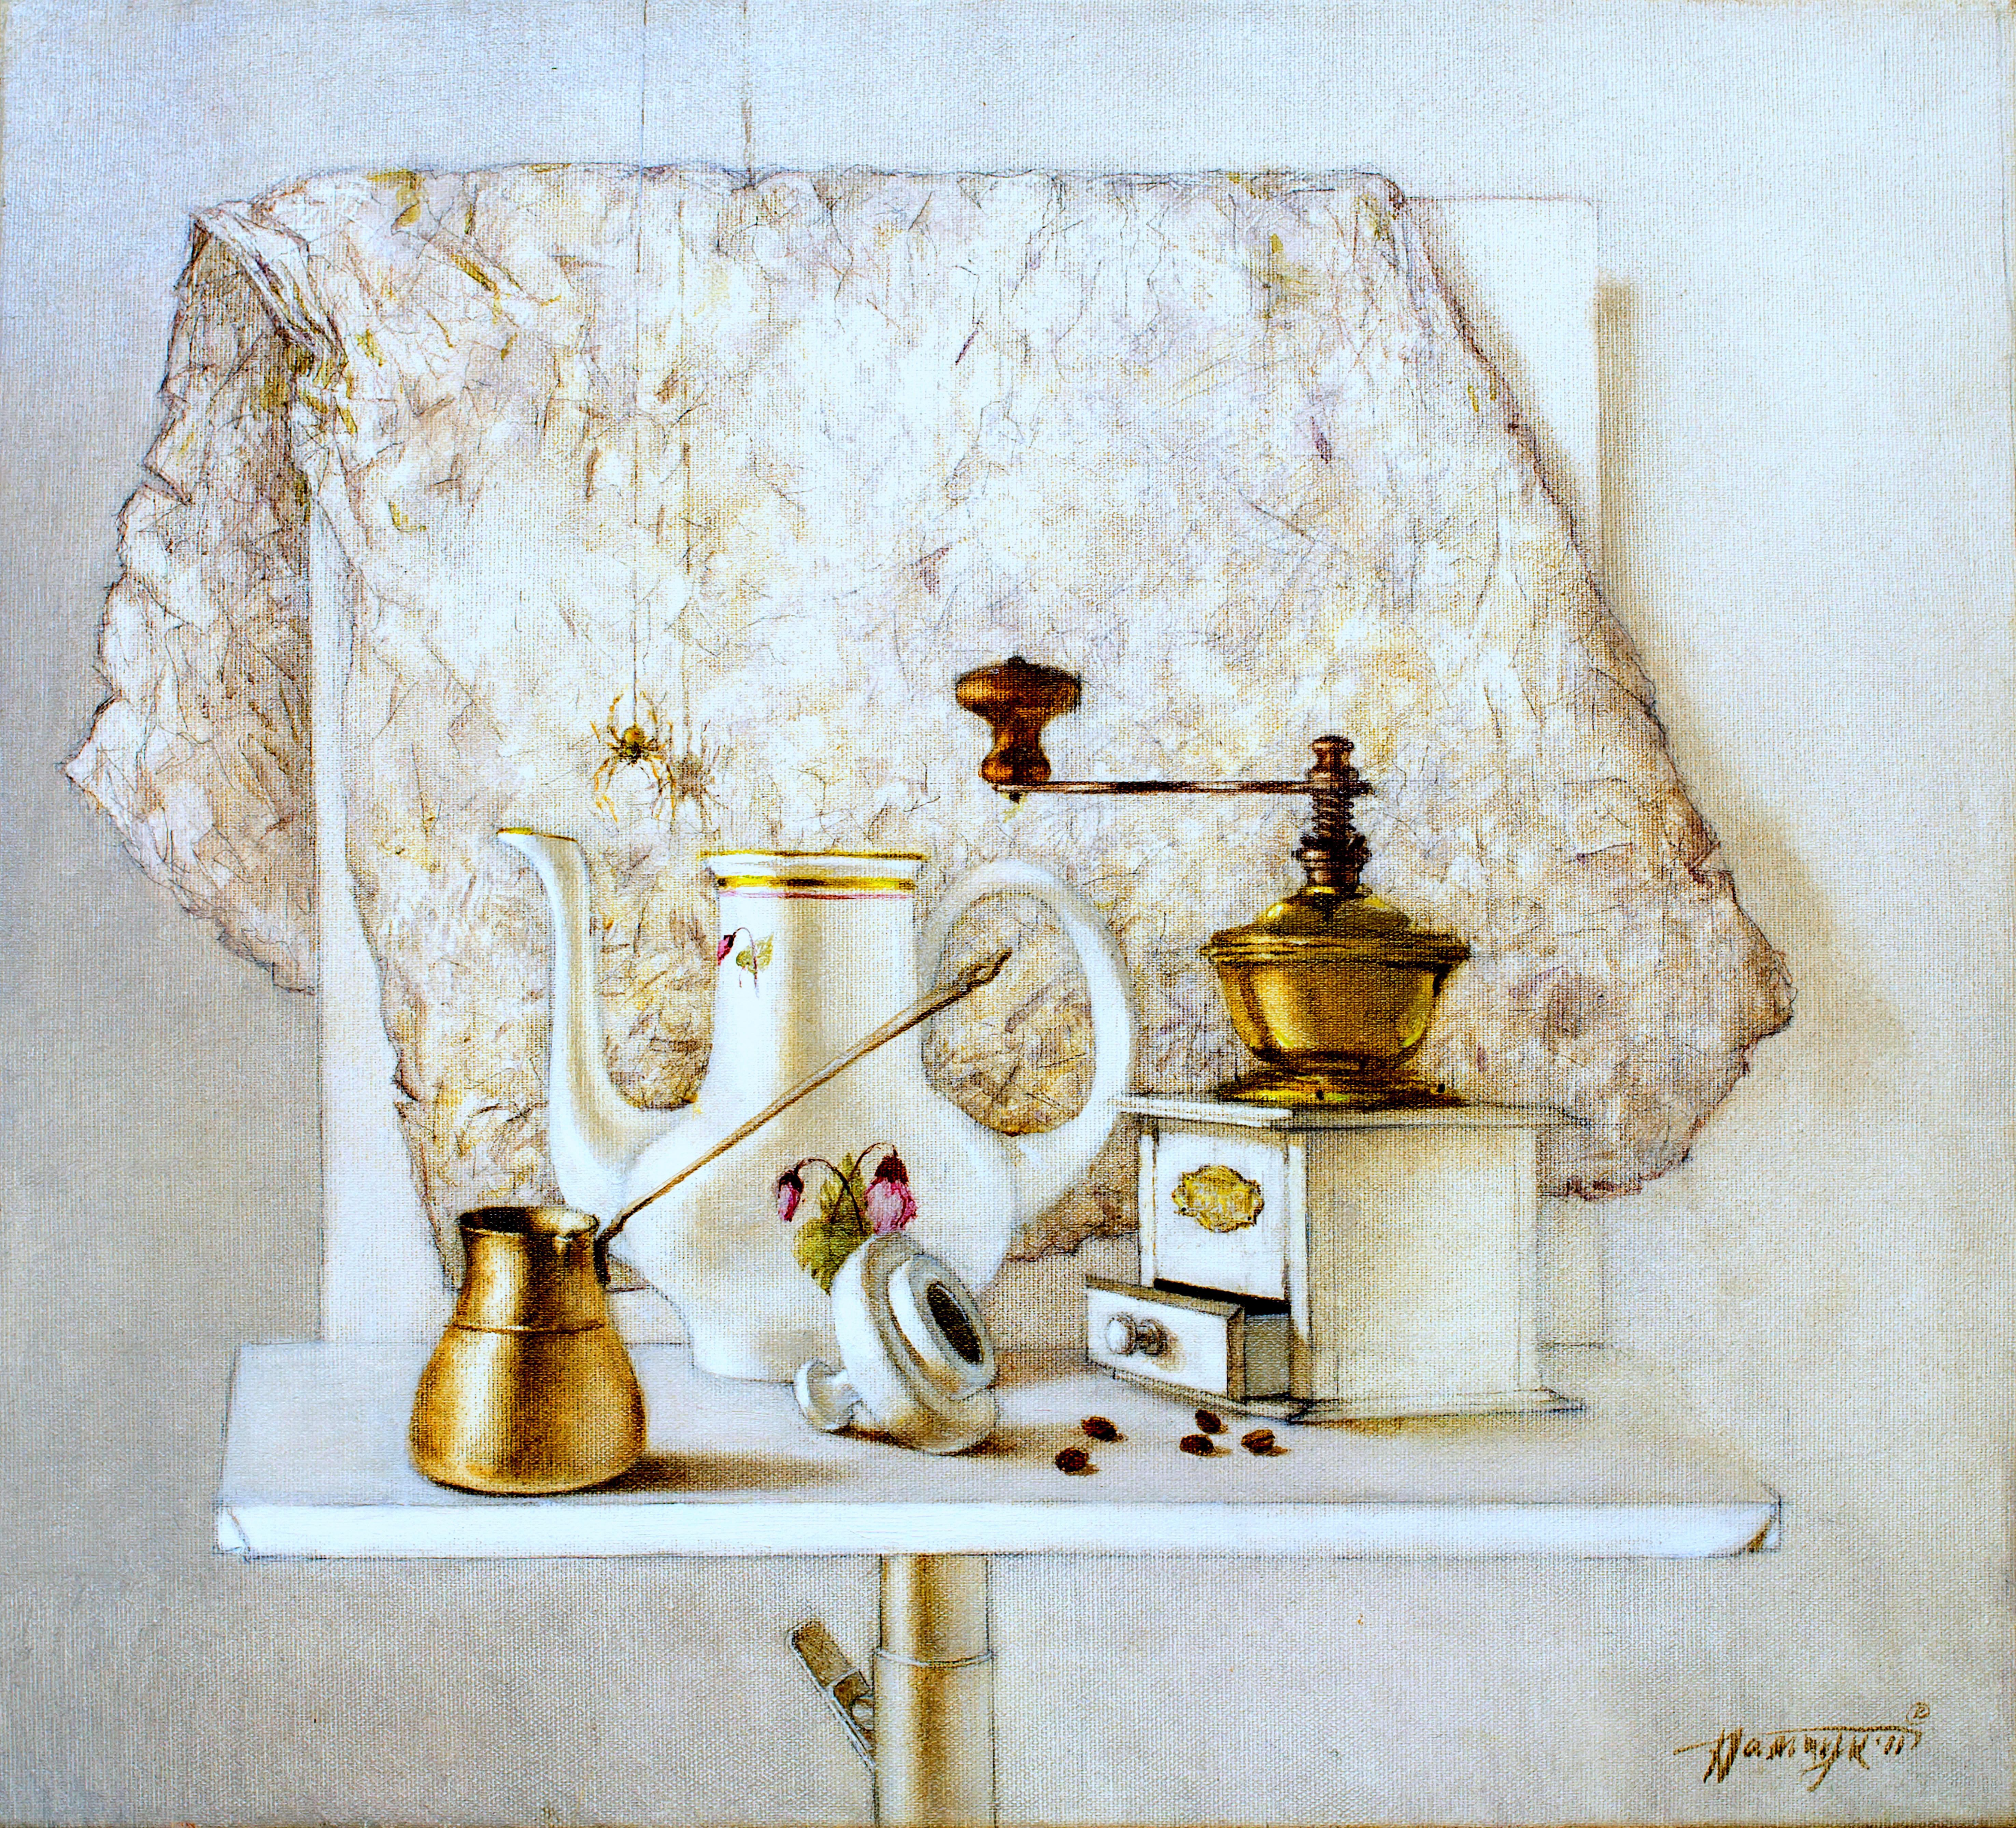 Stillleben mit Kaffeekannen. 2011. Öl auf Leinen, 45 x 50 cm